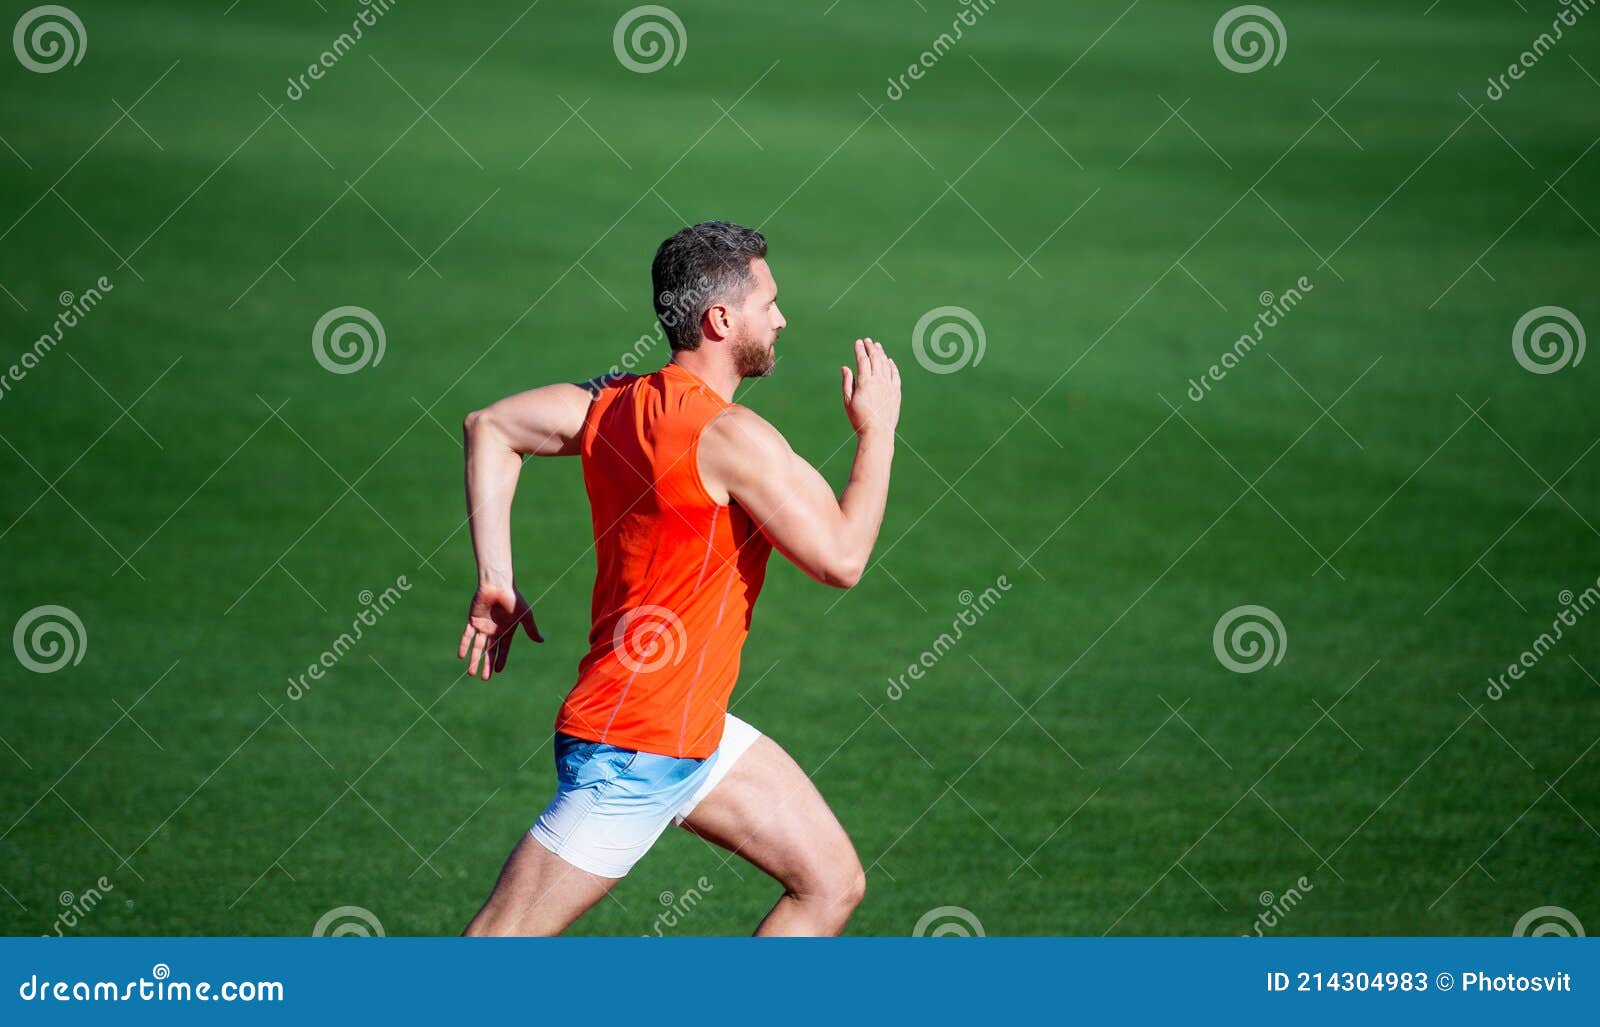 Hombre Deportista En Ropa Deportiva Correr Rápido Sprint En Velocidad De  Pista De Carreras Imagen de archivo - Imagen de deporte, deportes: 214304983